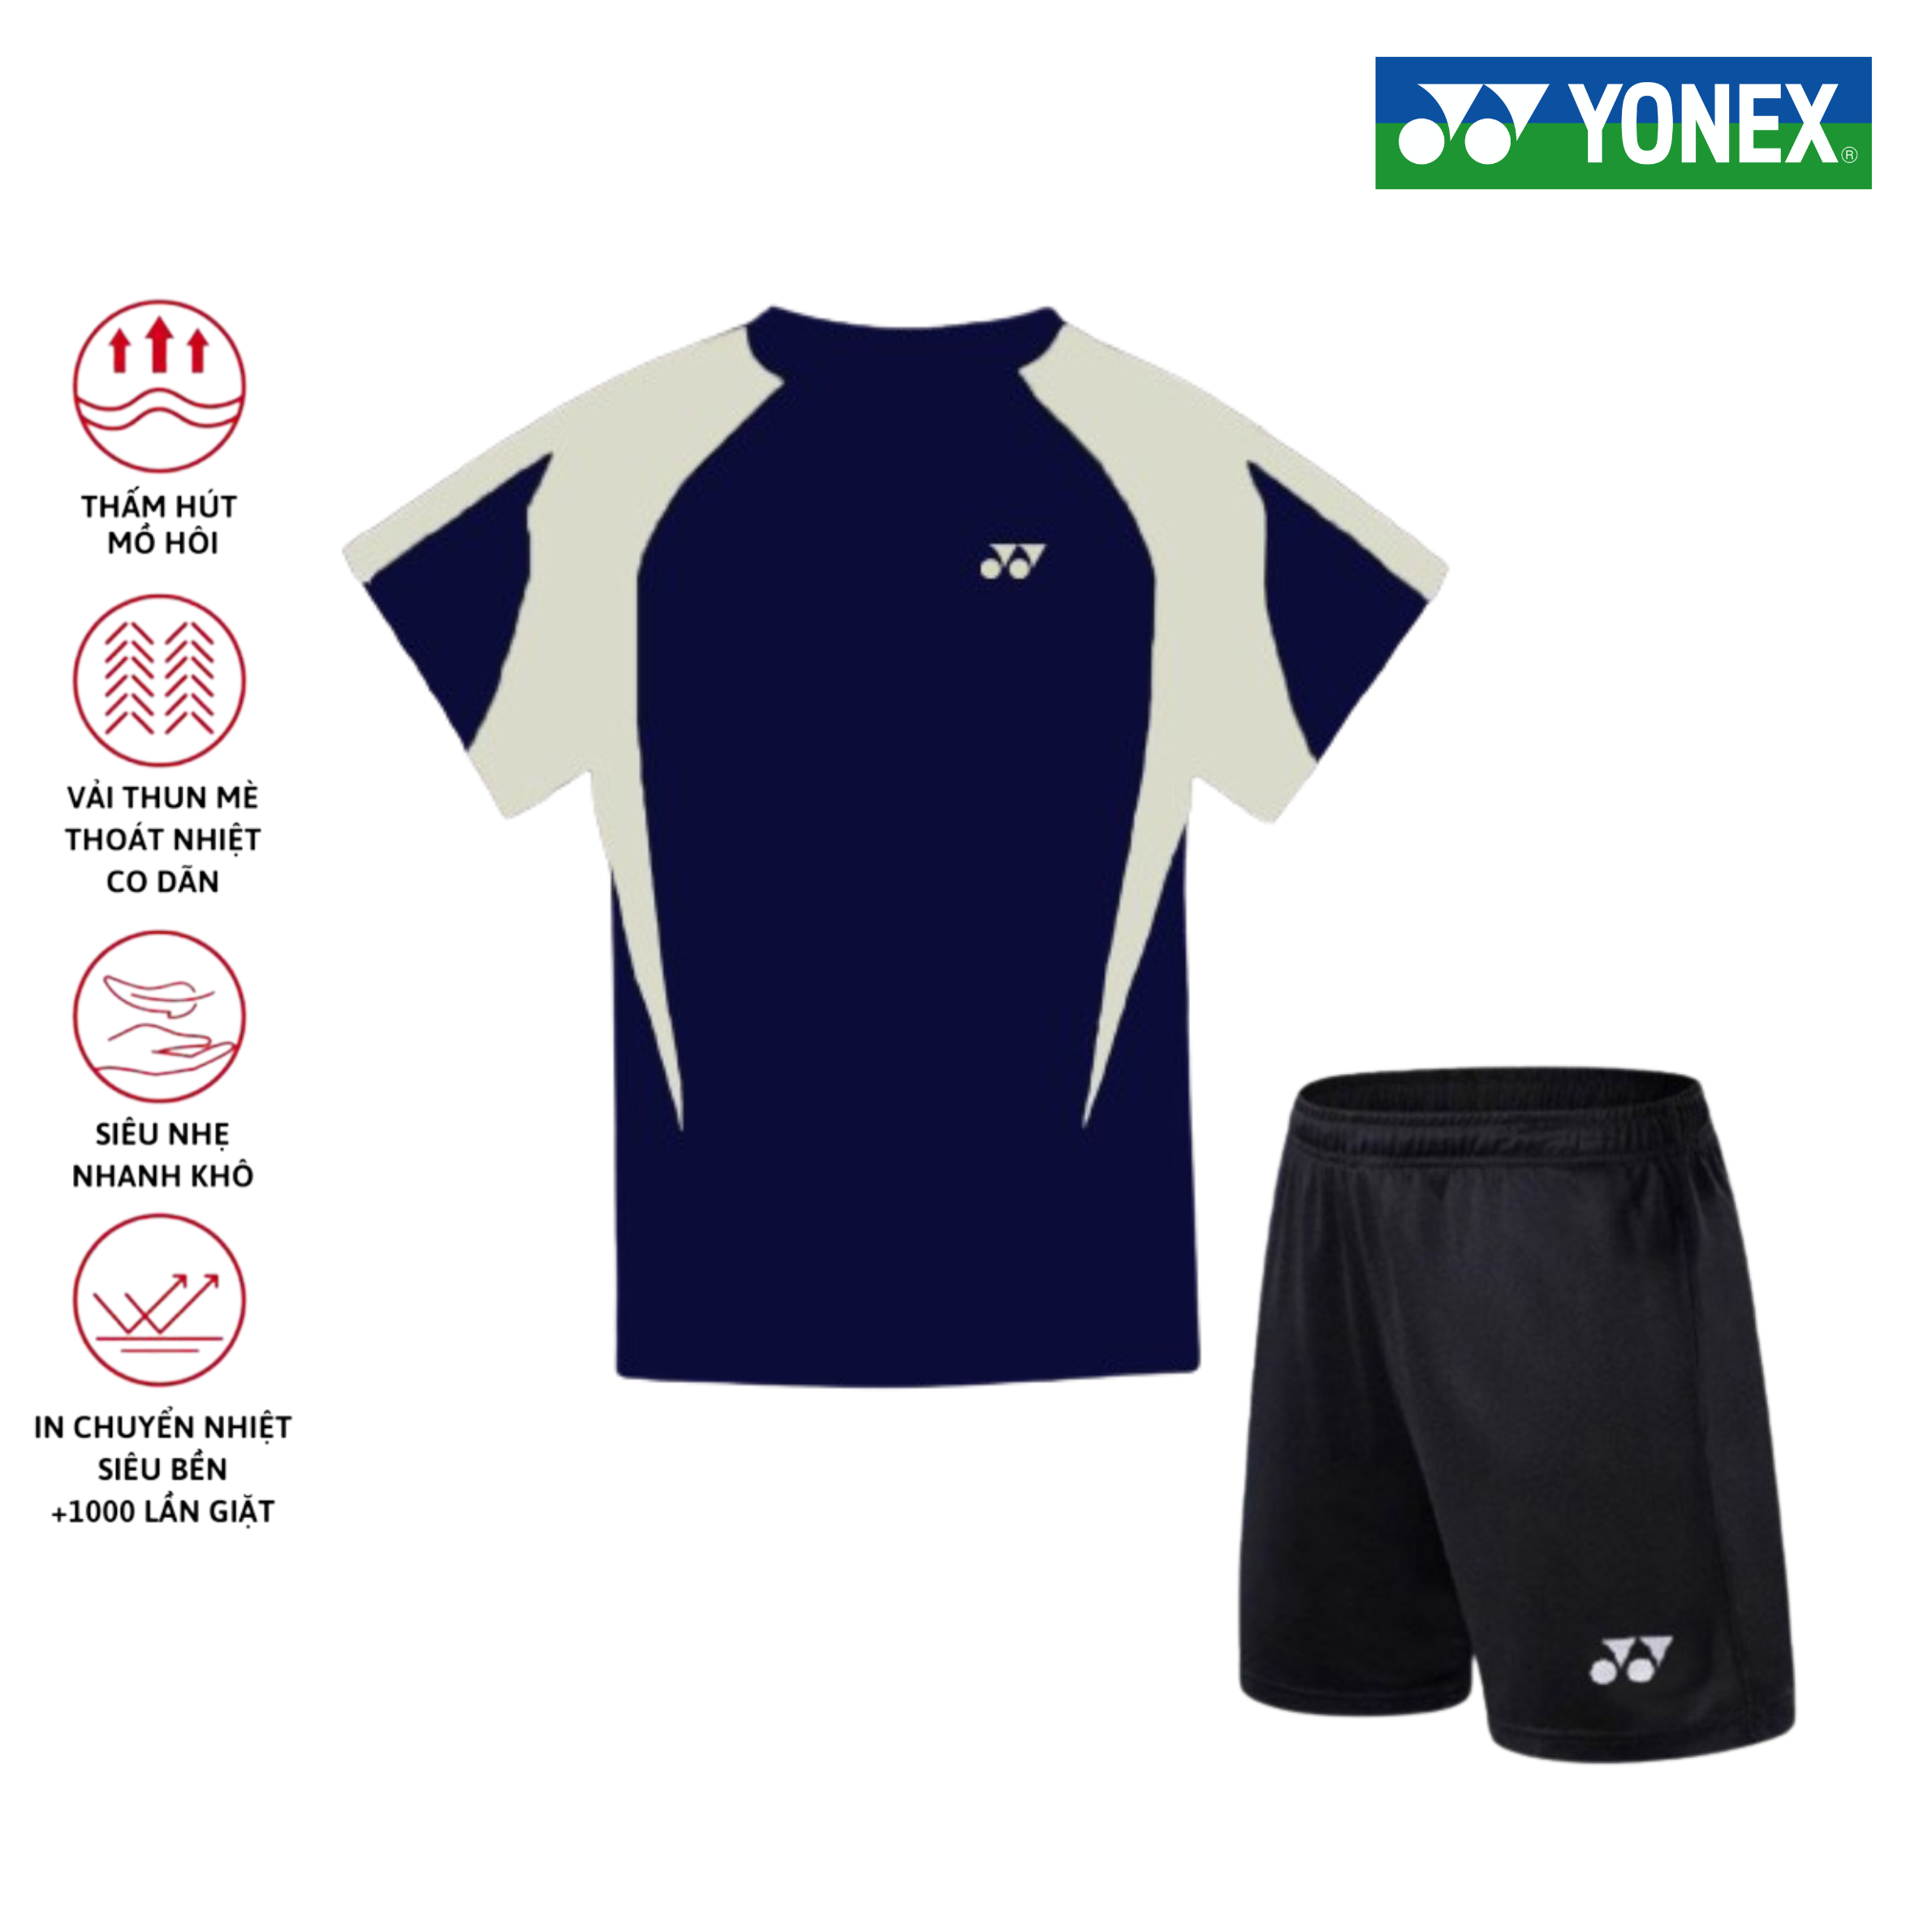 Áo cầu lông, quần cầu lông Yonex chuyên nghiệp mới nhất sử dụng tập luyện và thi đấu cầu lông A487